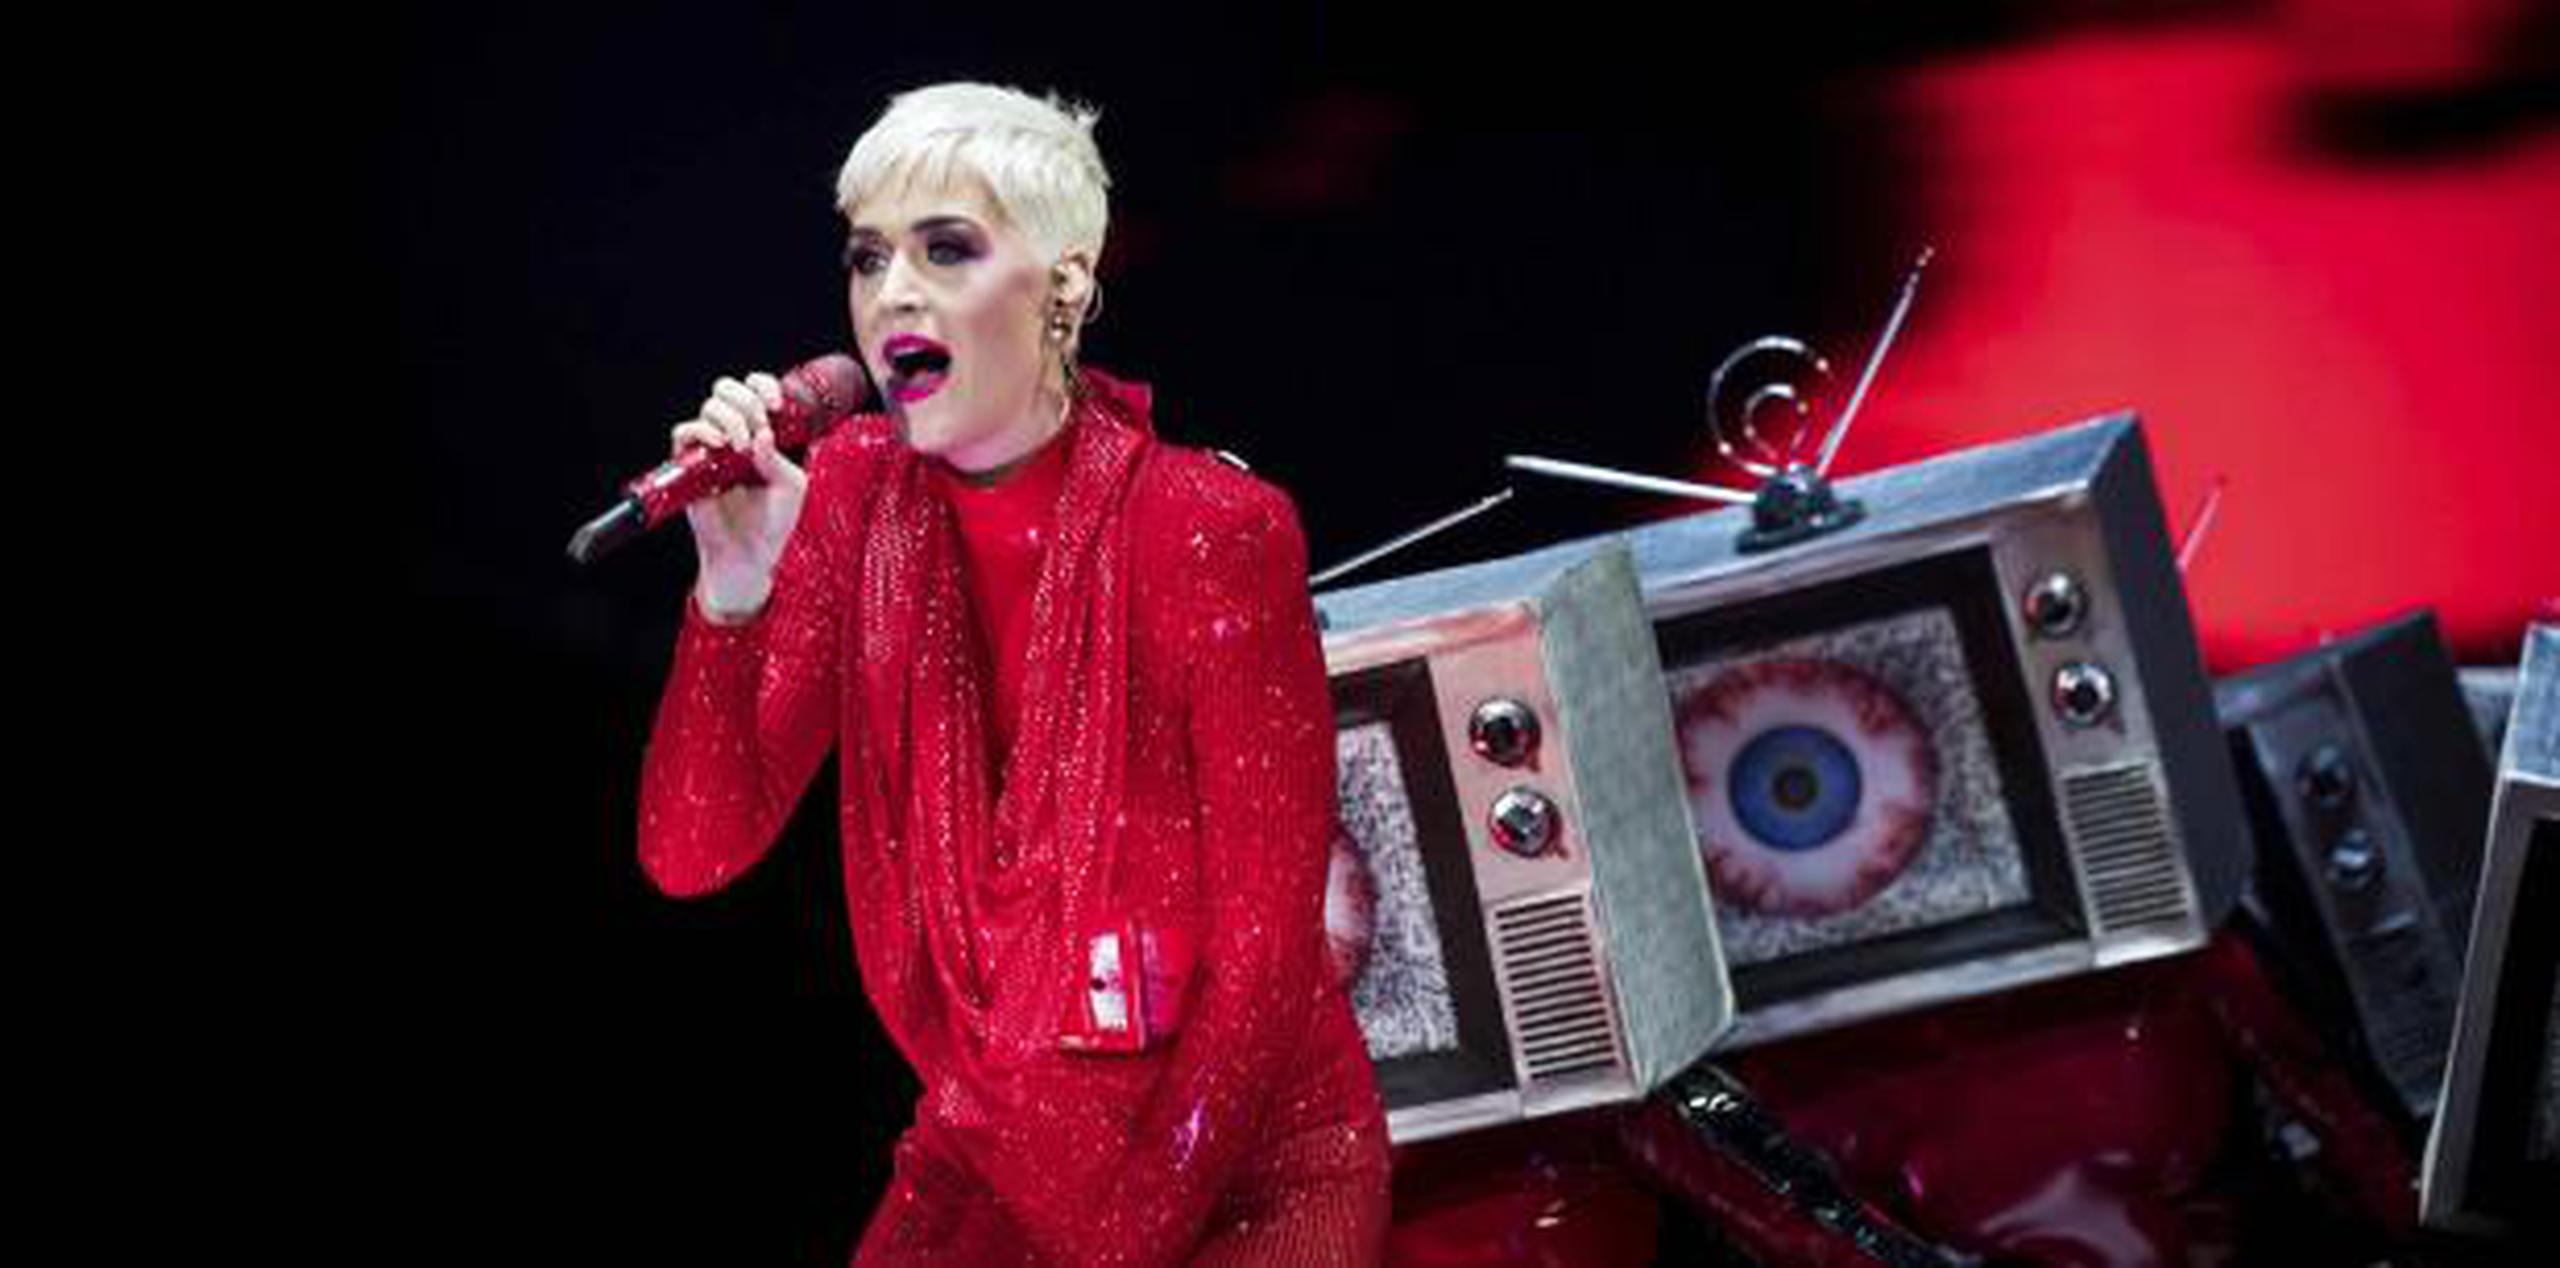 Este es el segundo escándalo en el que Katy Perry se ve inmersa durante los últimos meses. (Vianney Le Caer / Invision / AP)